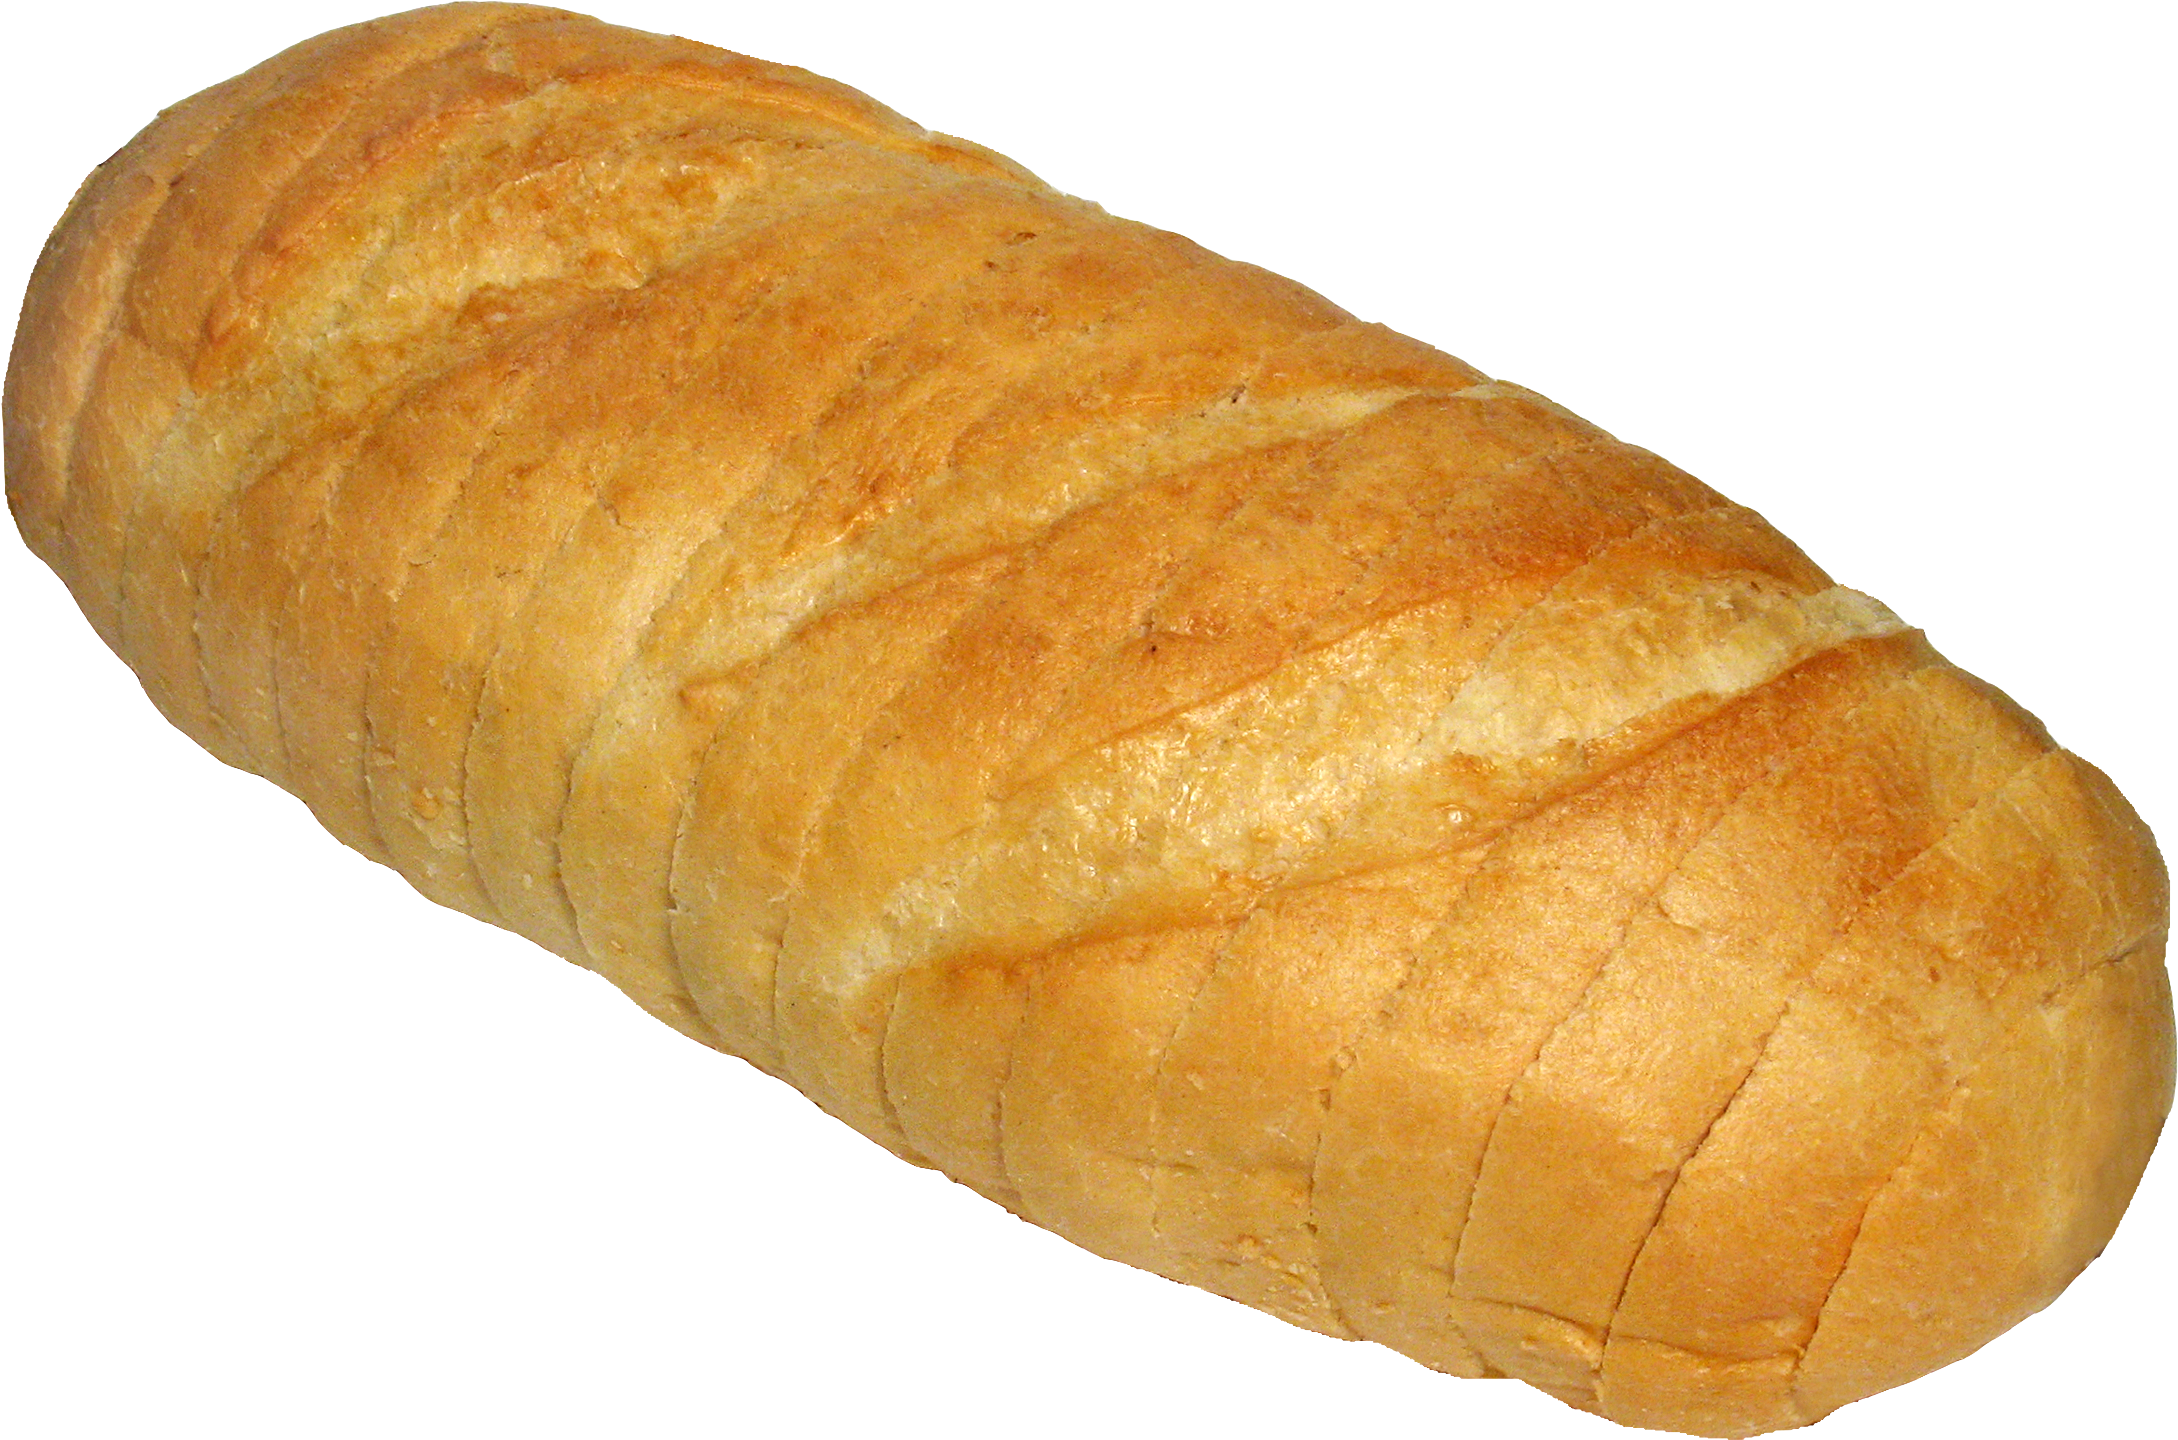 Loaf Bake Bread Free Transparent Image HQ PNG Image